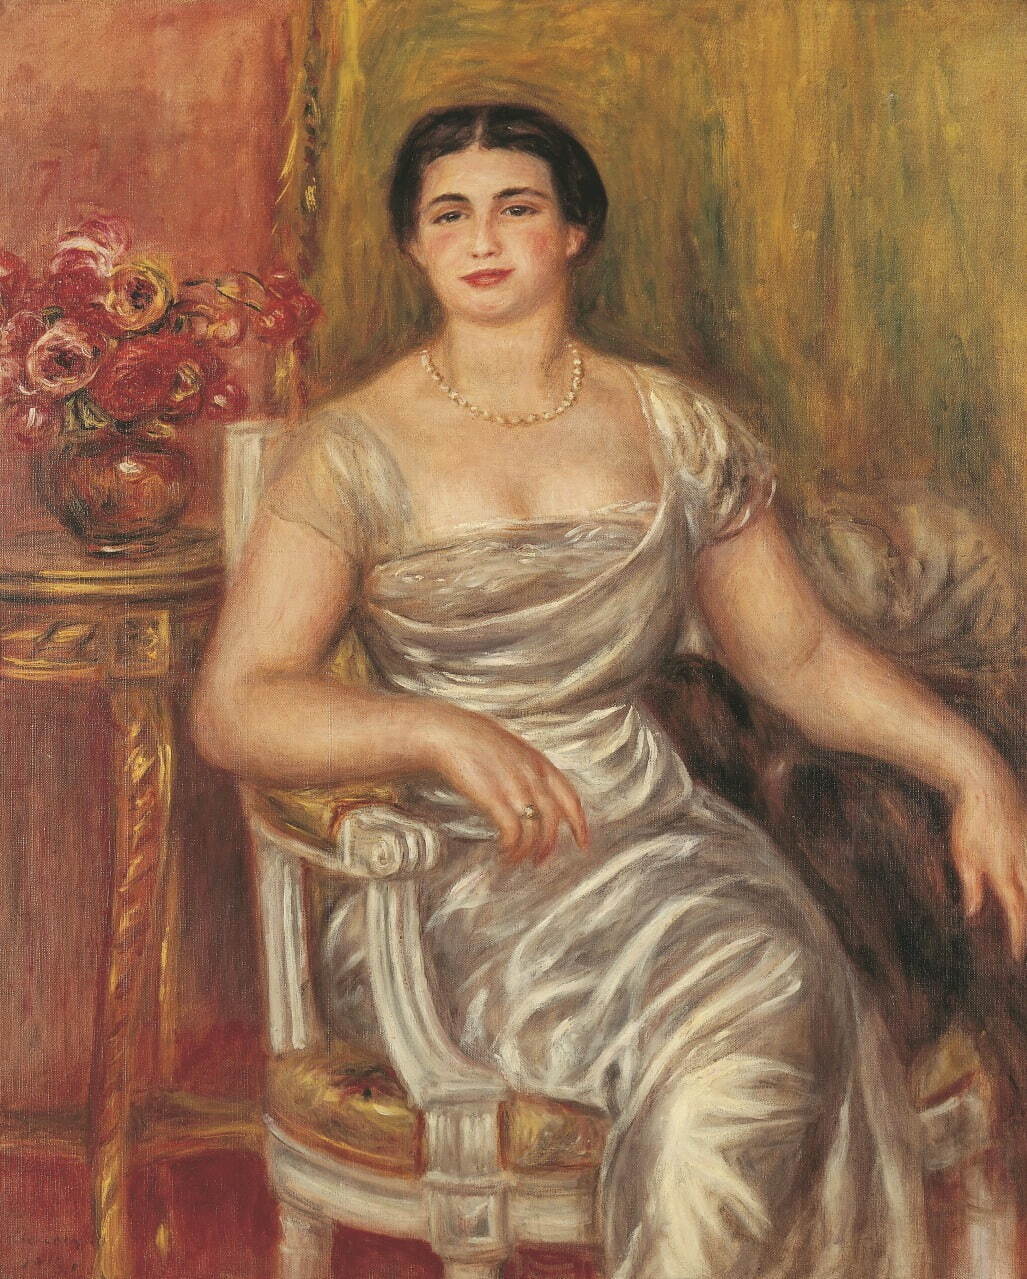 オーギュスト・ルノワール《詩人アリス・ヴァリエール＝メルツバッハの肖像》1913年、油彩・カンヴァス
ASSOCIATION DES AMIS DU PETIT PALAIS, GENEVE